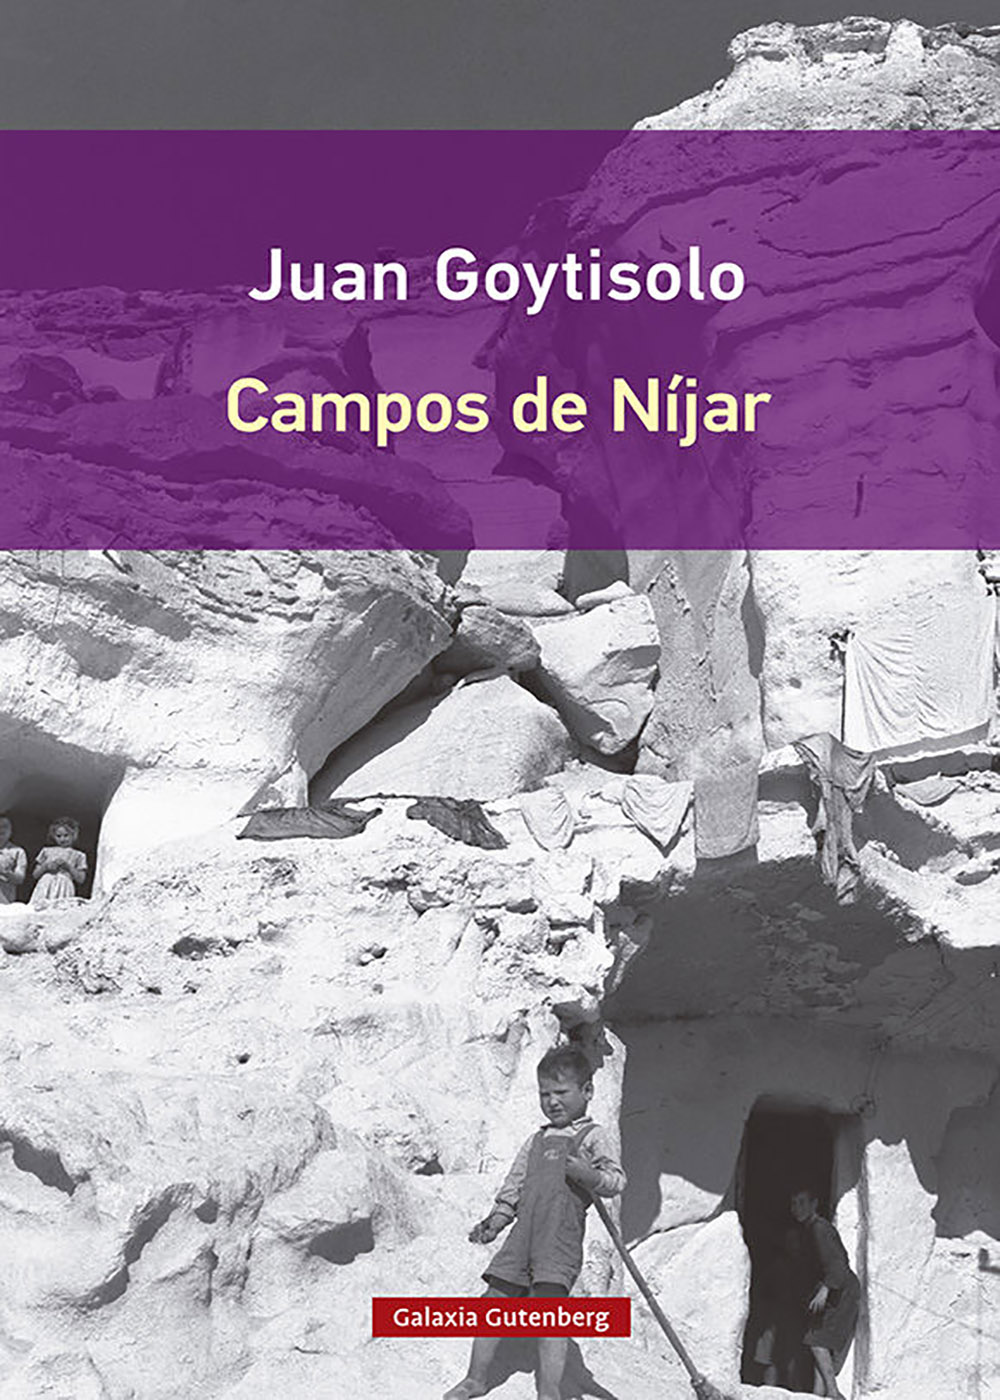 Juan Goytisolo - Campos de Níjar